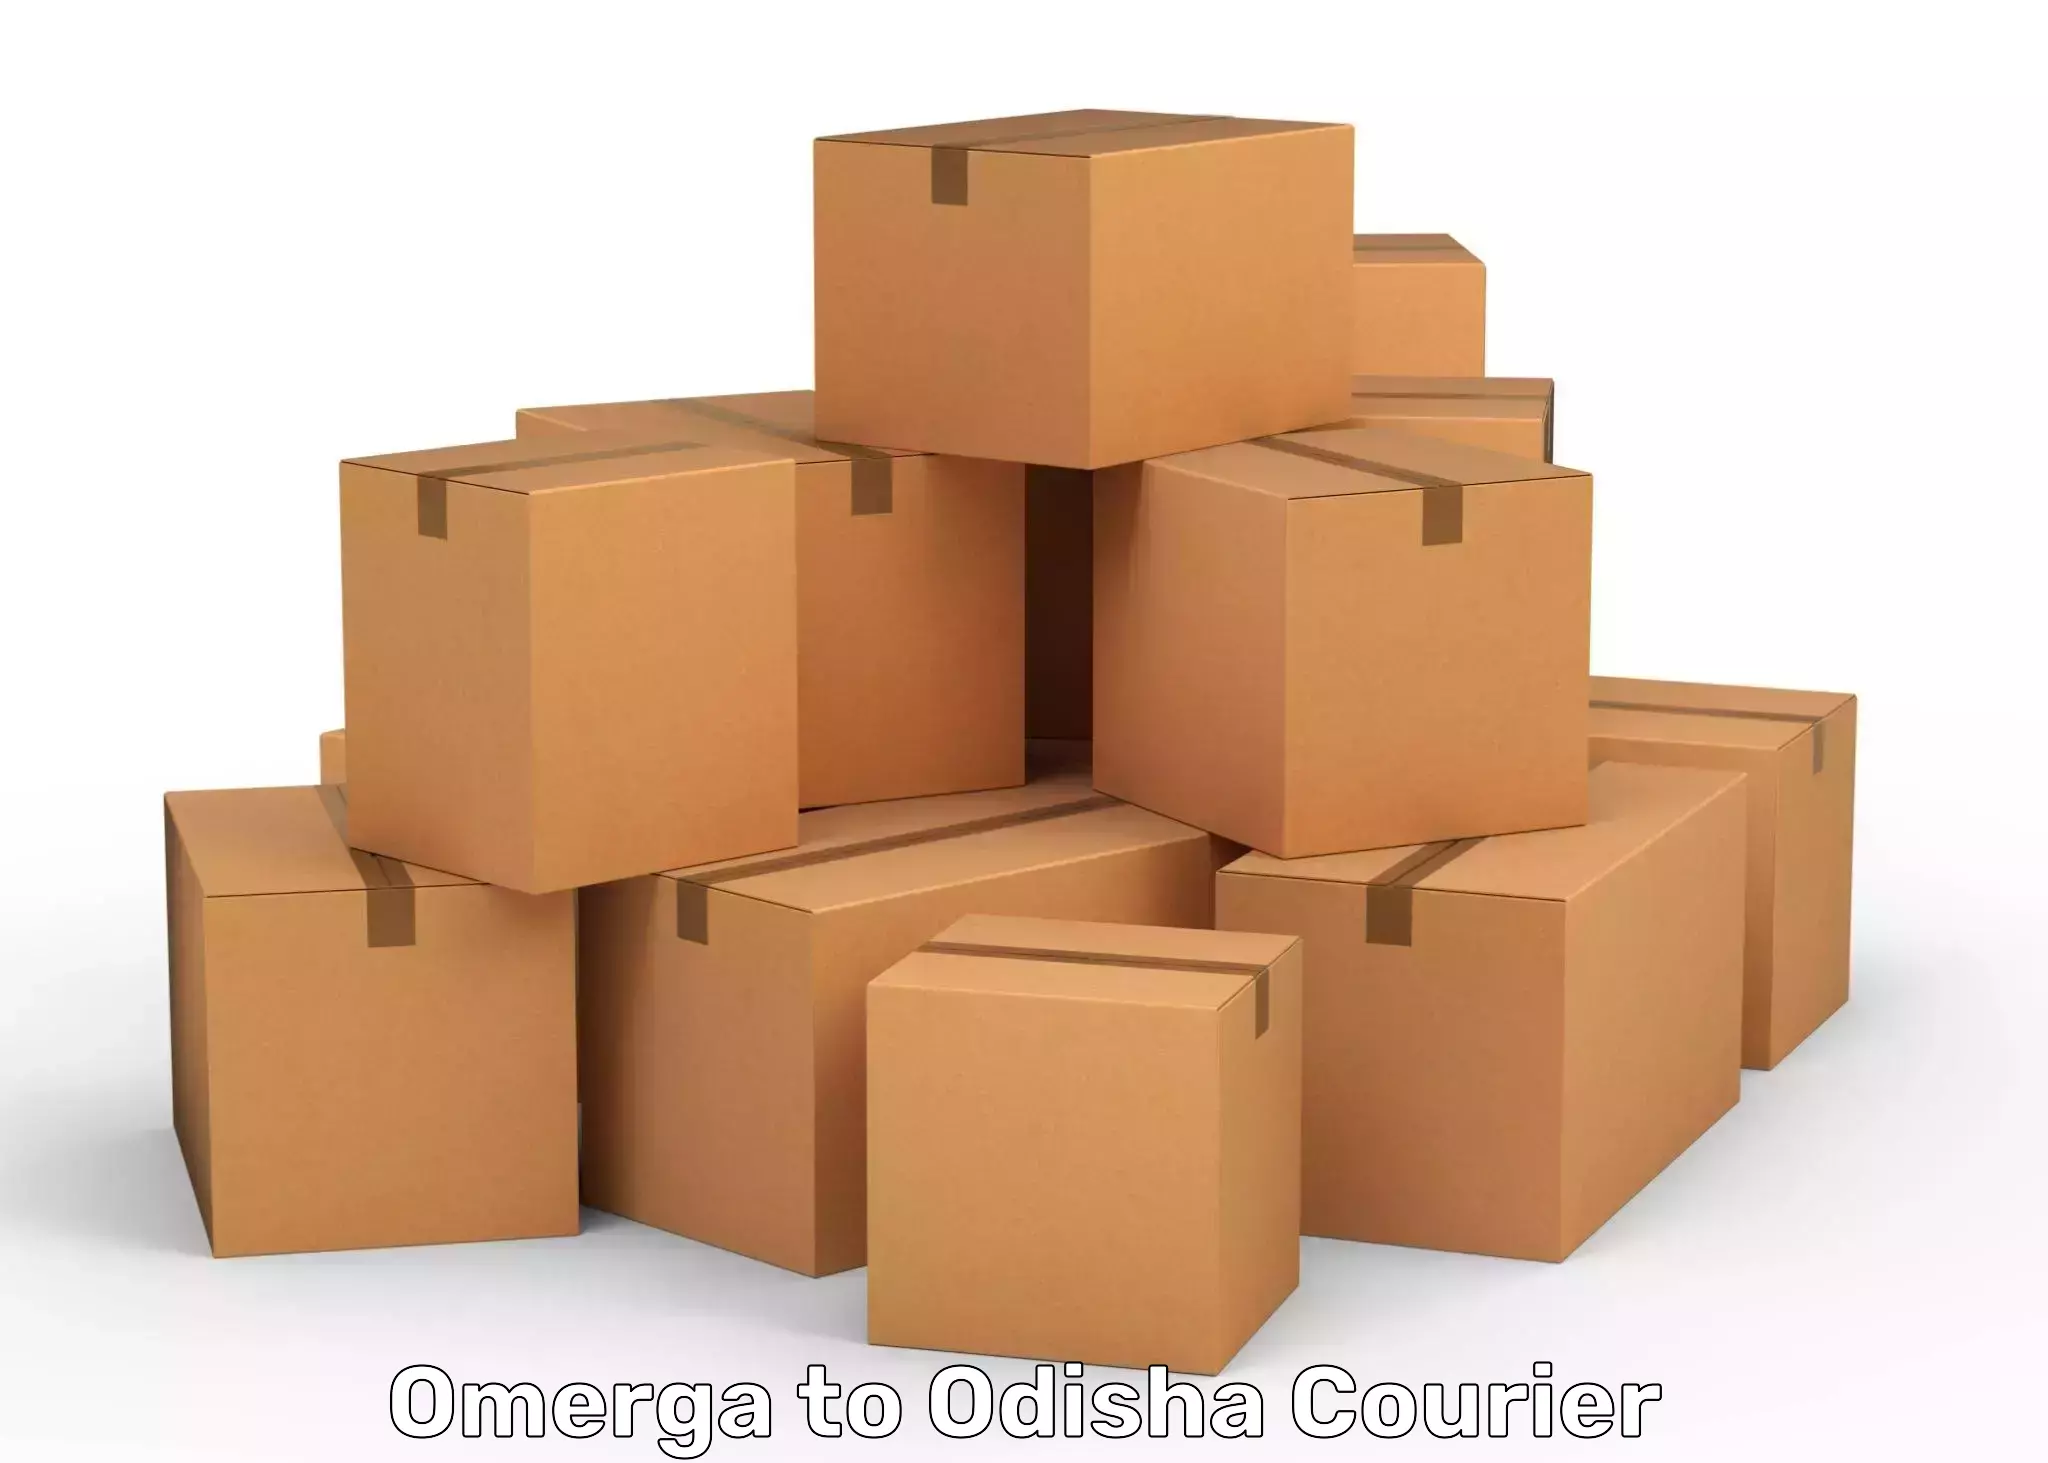 Customer-centric shipping Omerga to Bhutasarasingi